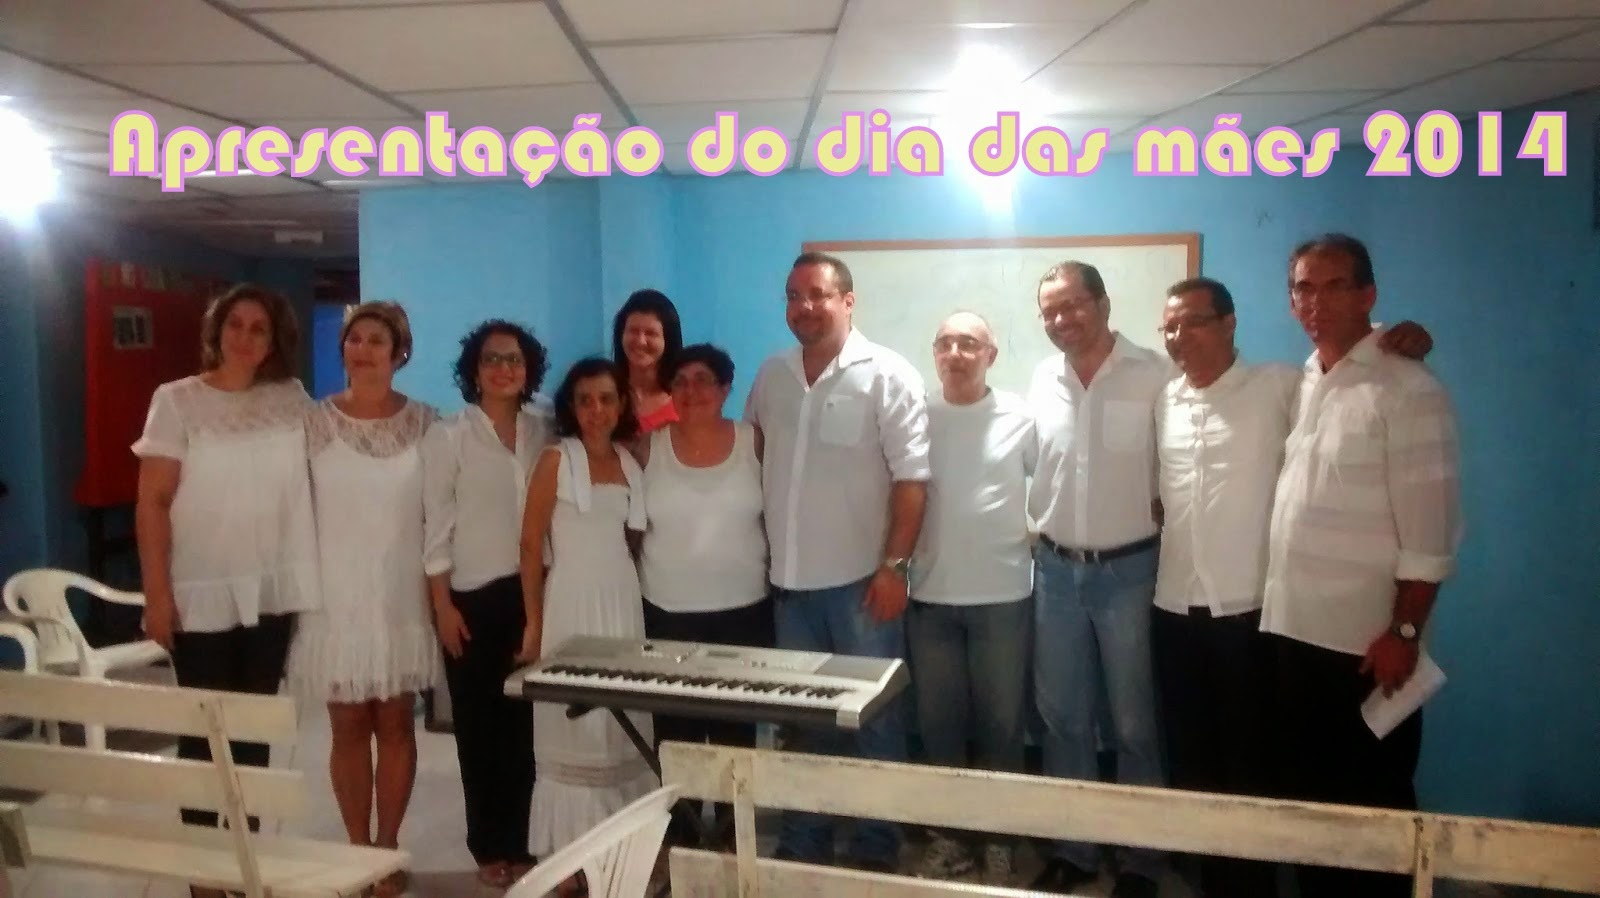  http://coralaccordis.blogspot.com.br/2014/07/apresentacao-no-dia-das-maes.html